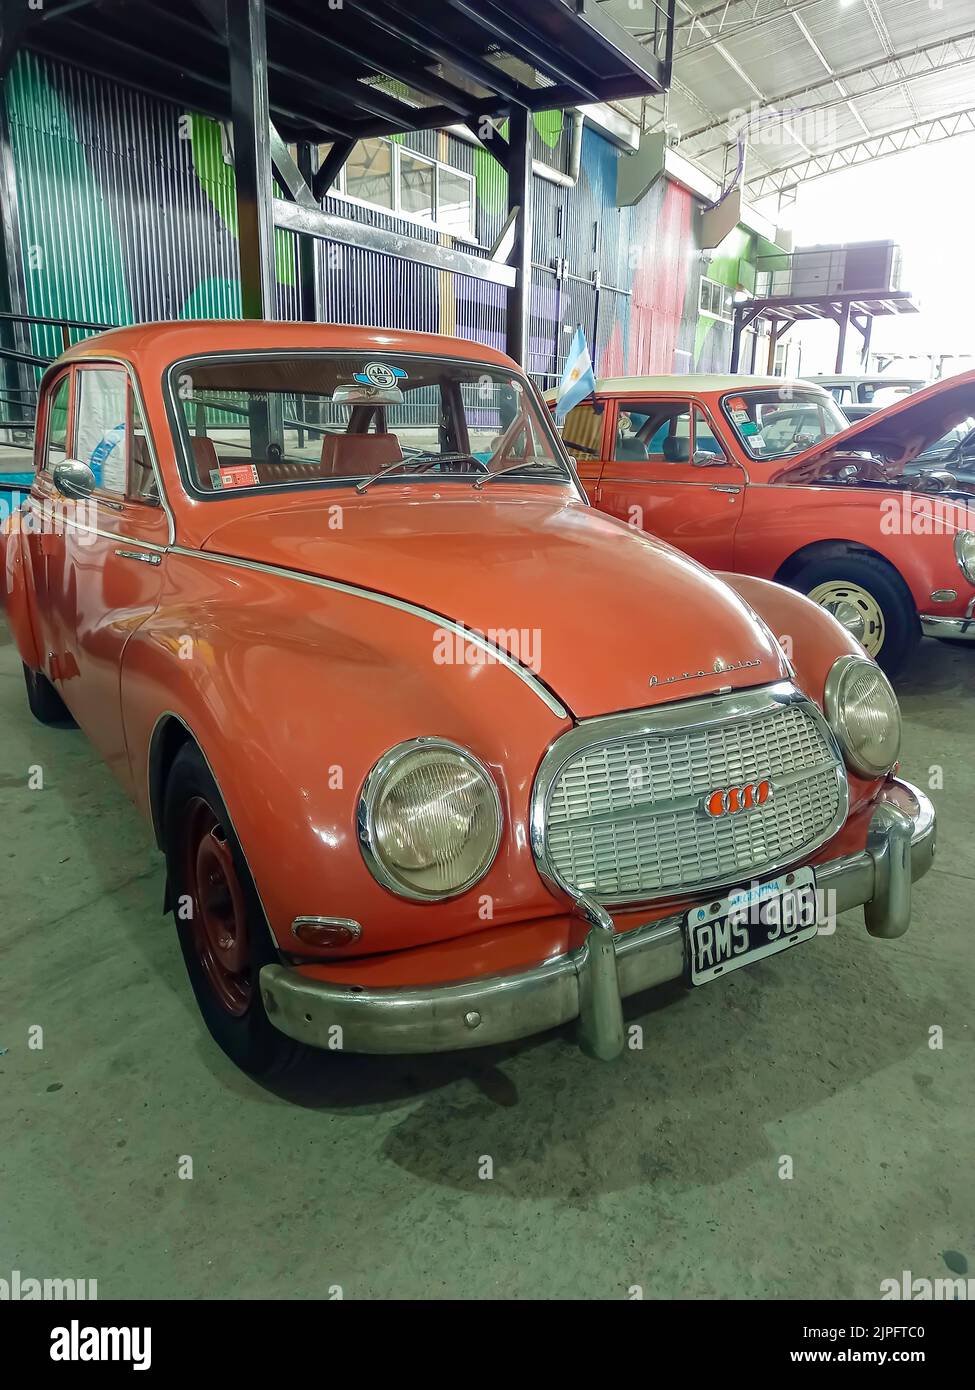 Old Orange Auto Union DKW 1000 S berlina a quattro porte 1960-1970 parcheggiata in un deposito. Vista frontale. Spettacolo di auto classica. CopySpace Foto Stock